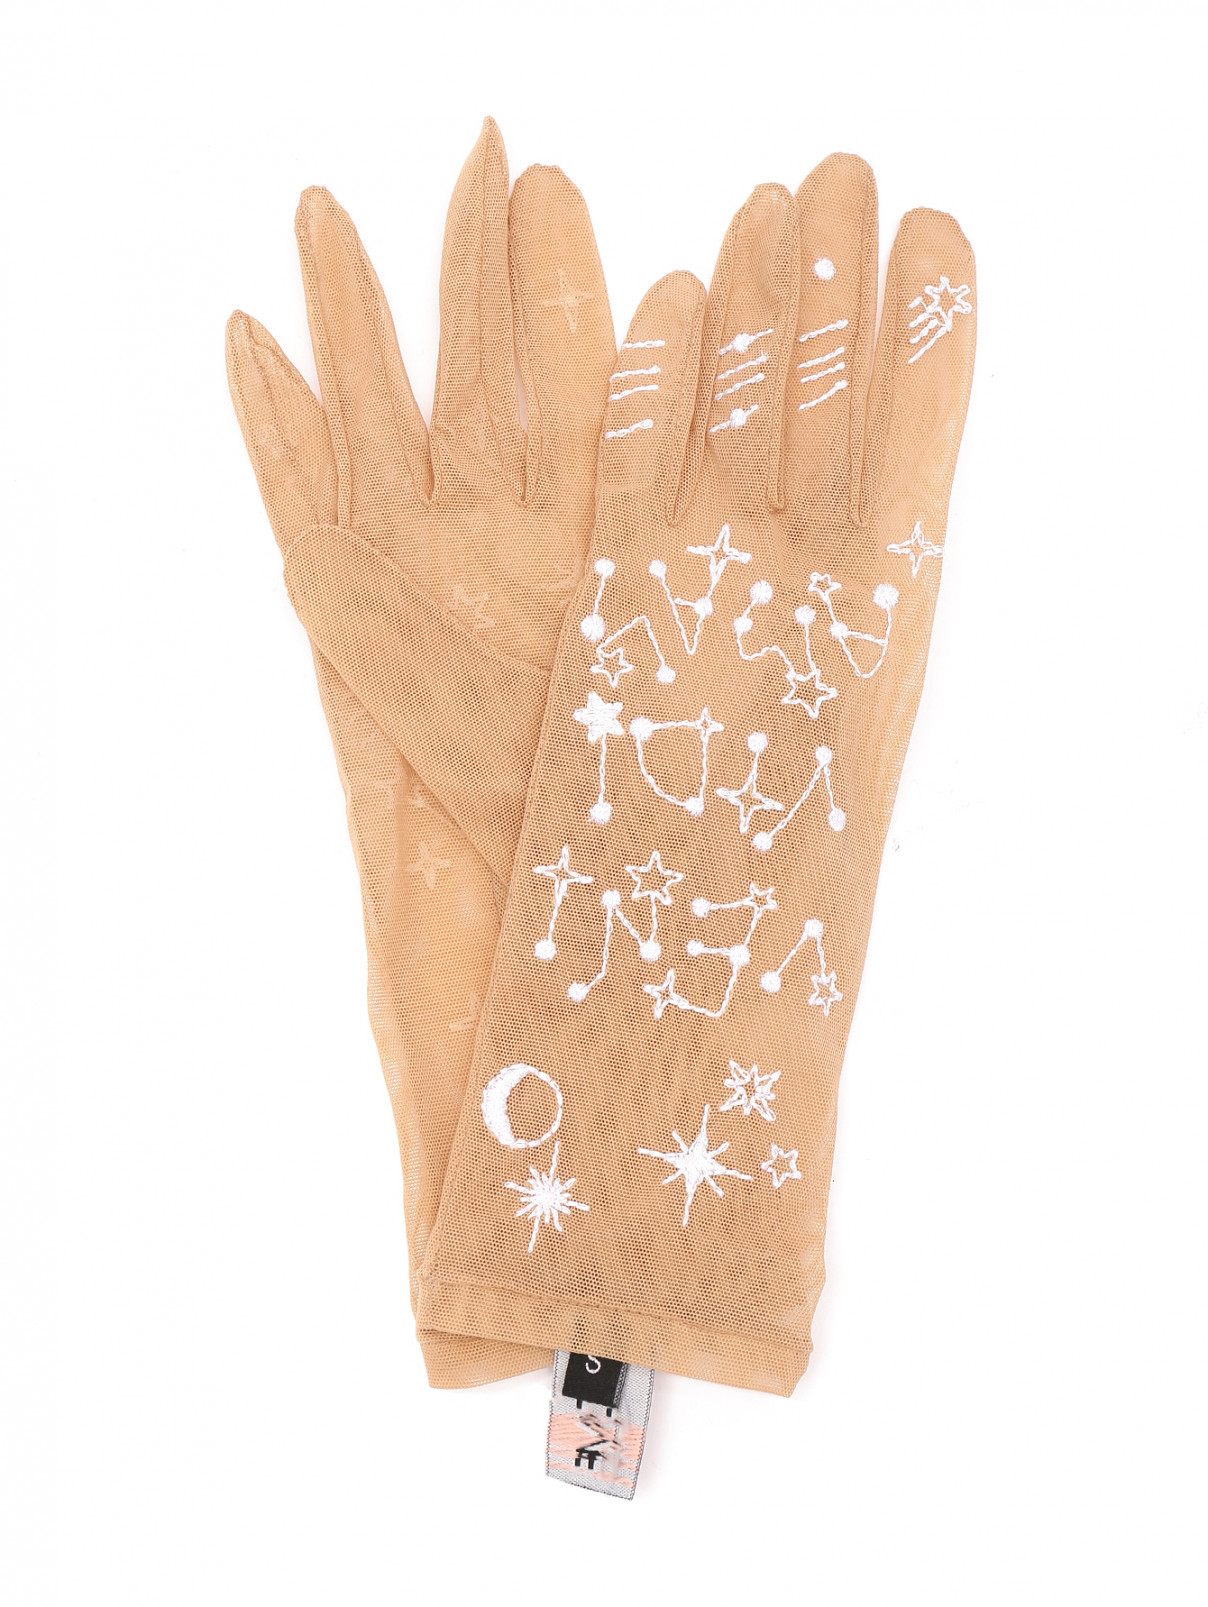 Перчатки из сетки с вышивкой Glove.me  –  Общий вид  – Цвет:  Бежевый